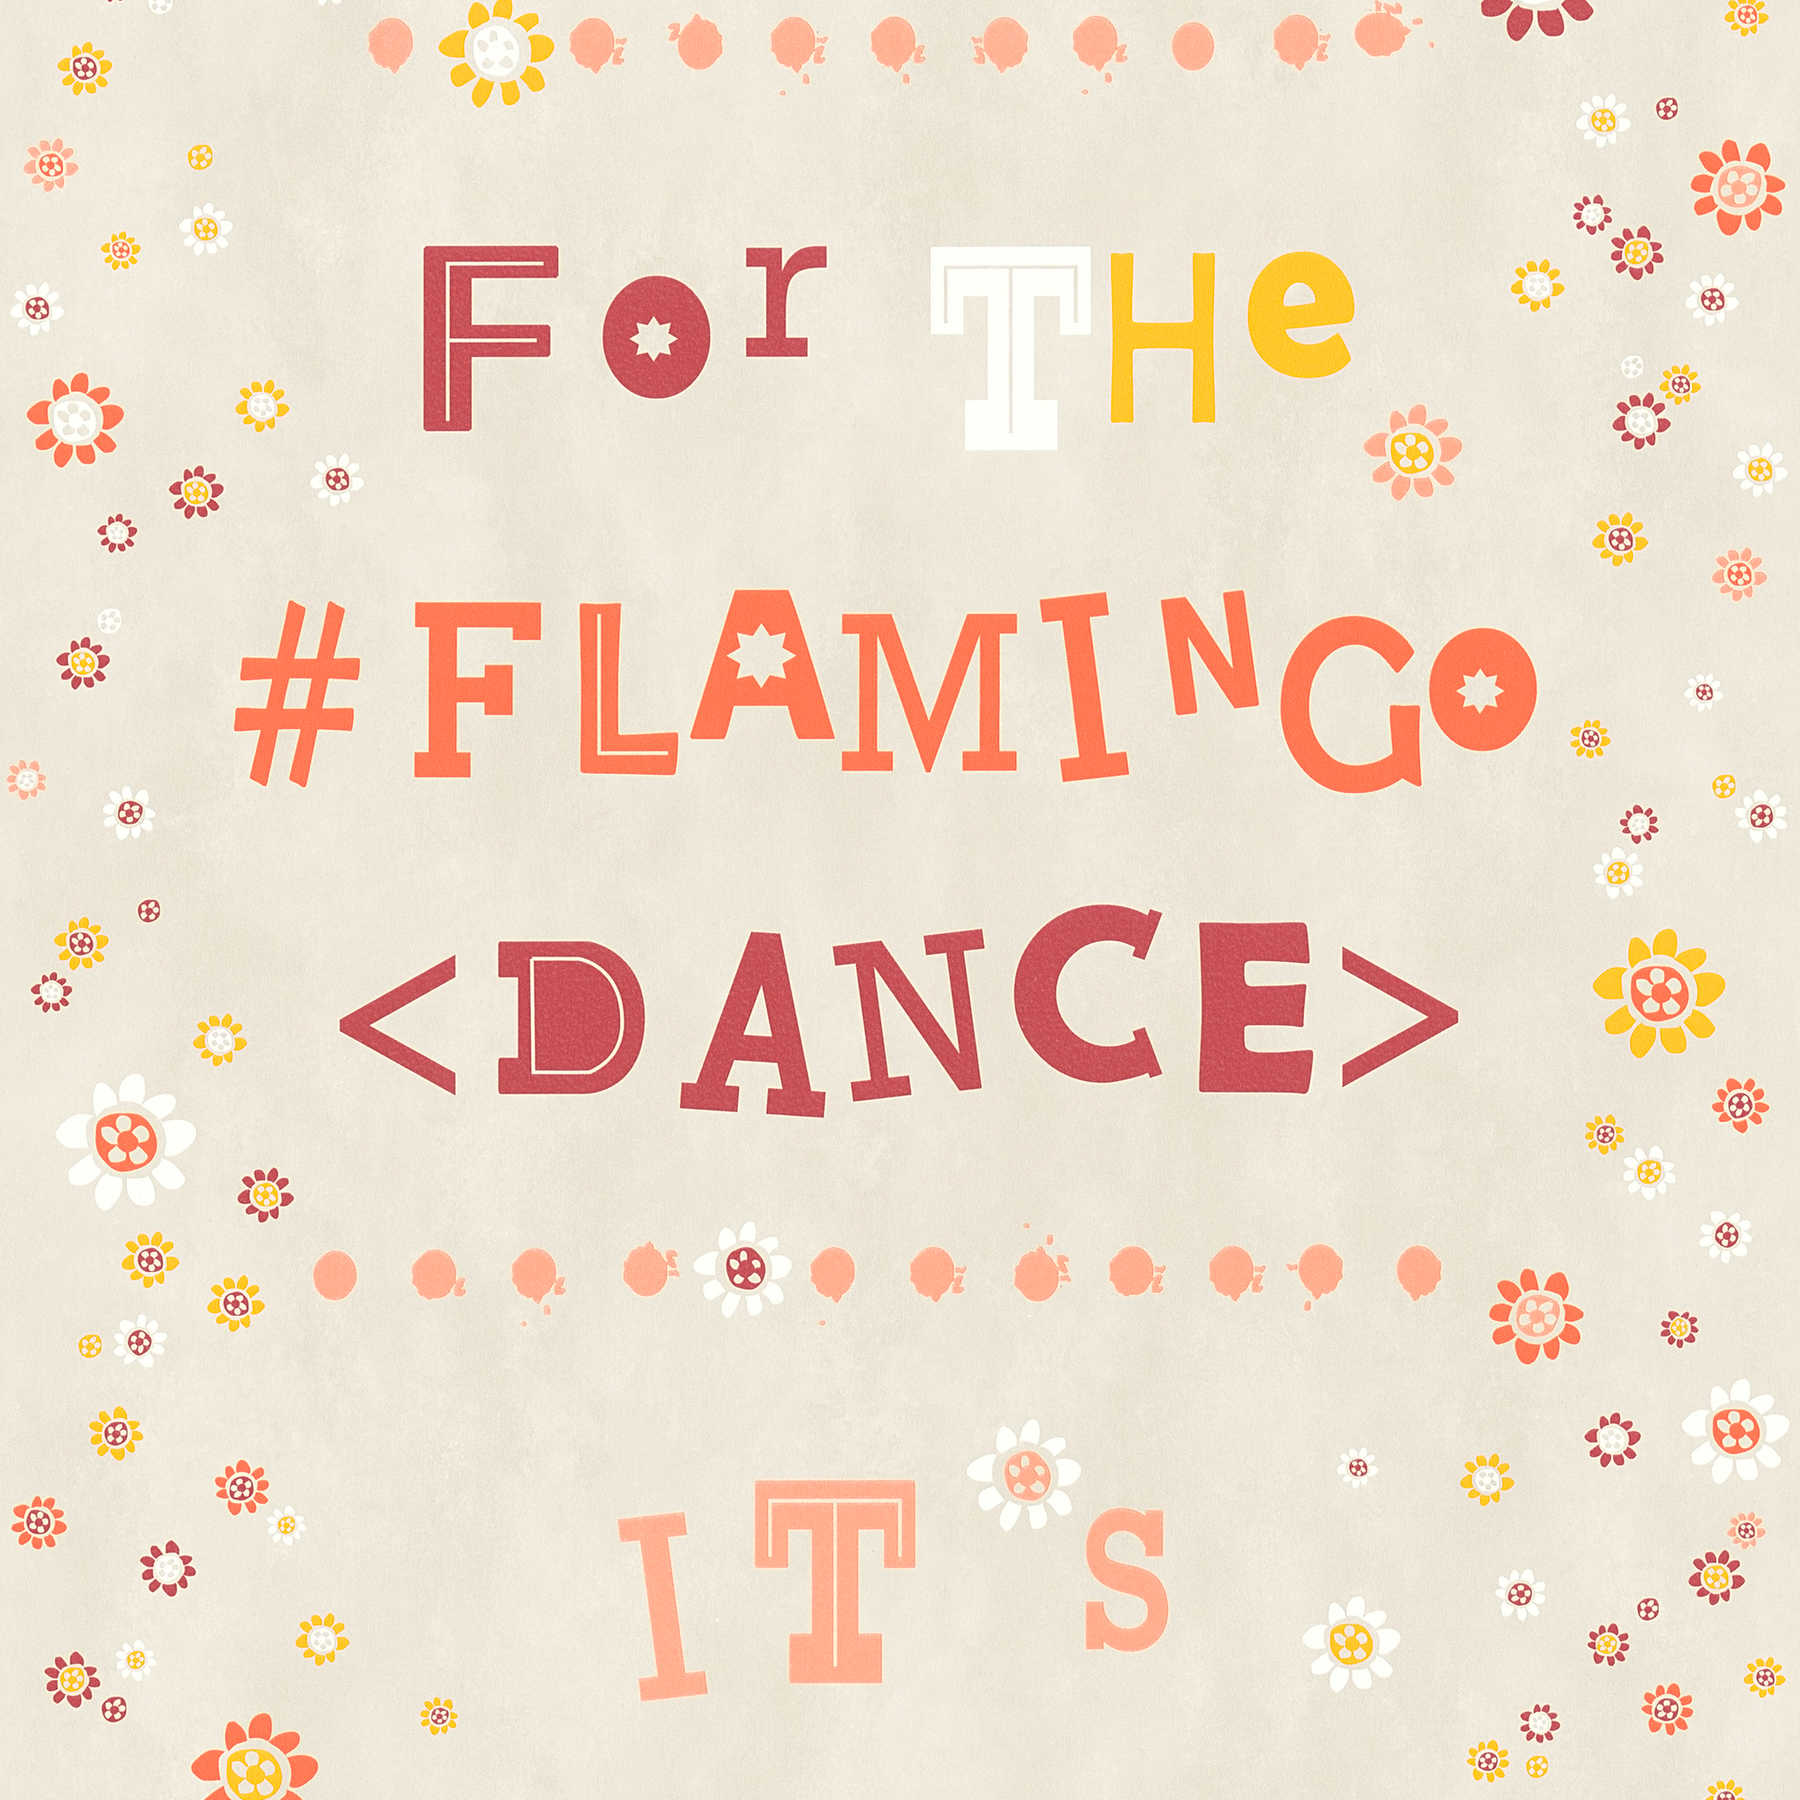         Vliestapete Flamingo & Blumen mit Letter Design – Beige, Orange
    